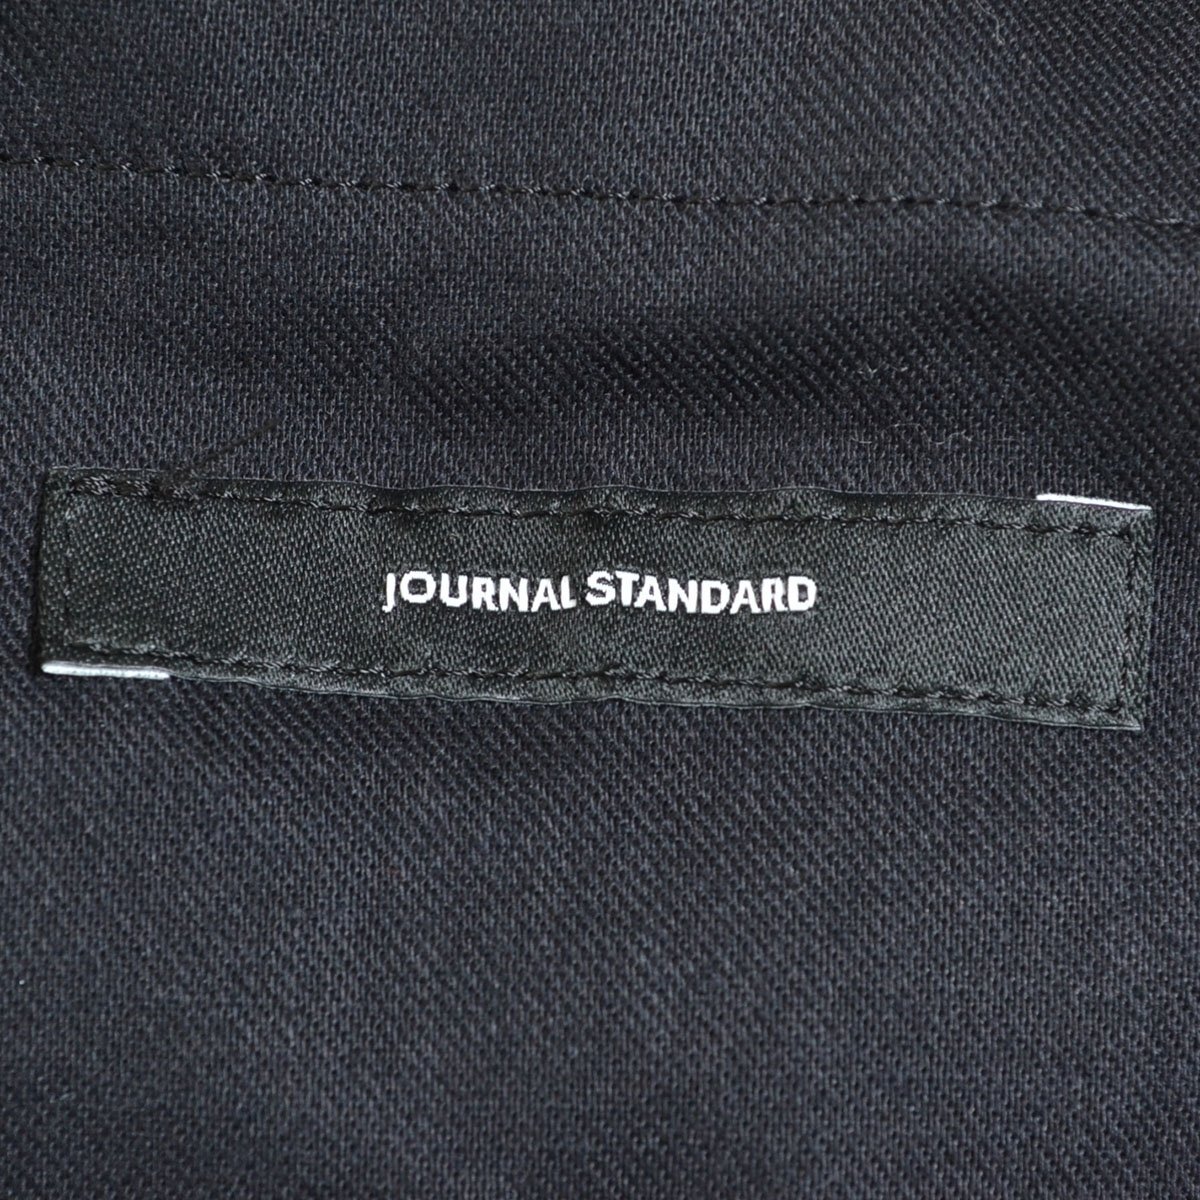 ◇327849 JOURNAL STANDARD ジャーナルスタンダード コンフォートウールワイドパンツ 2017AW サイズ36 レディース ブラックの画像4